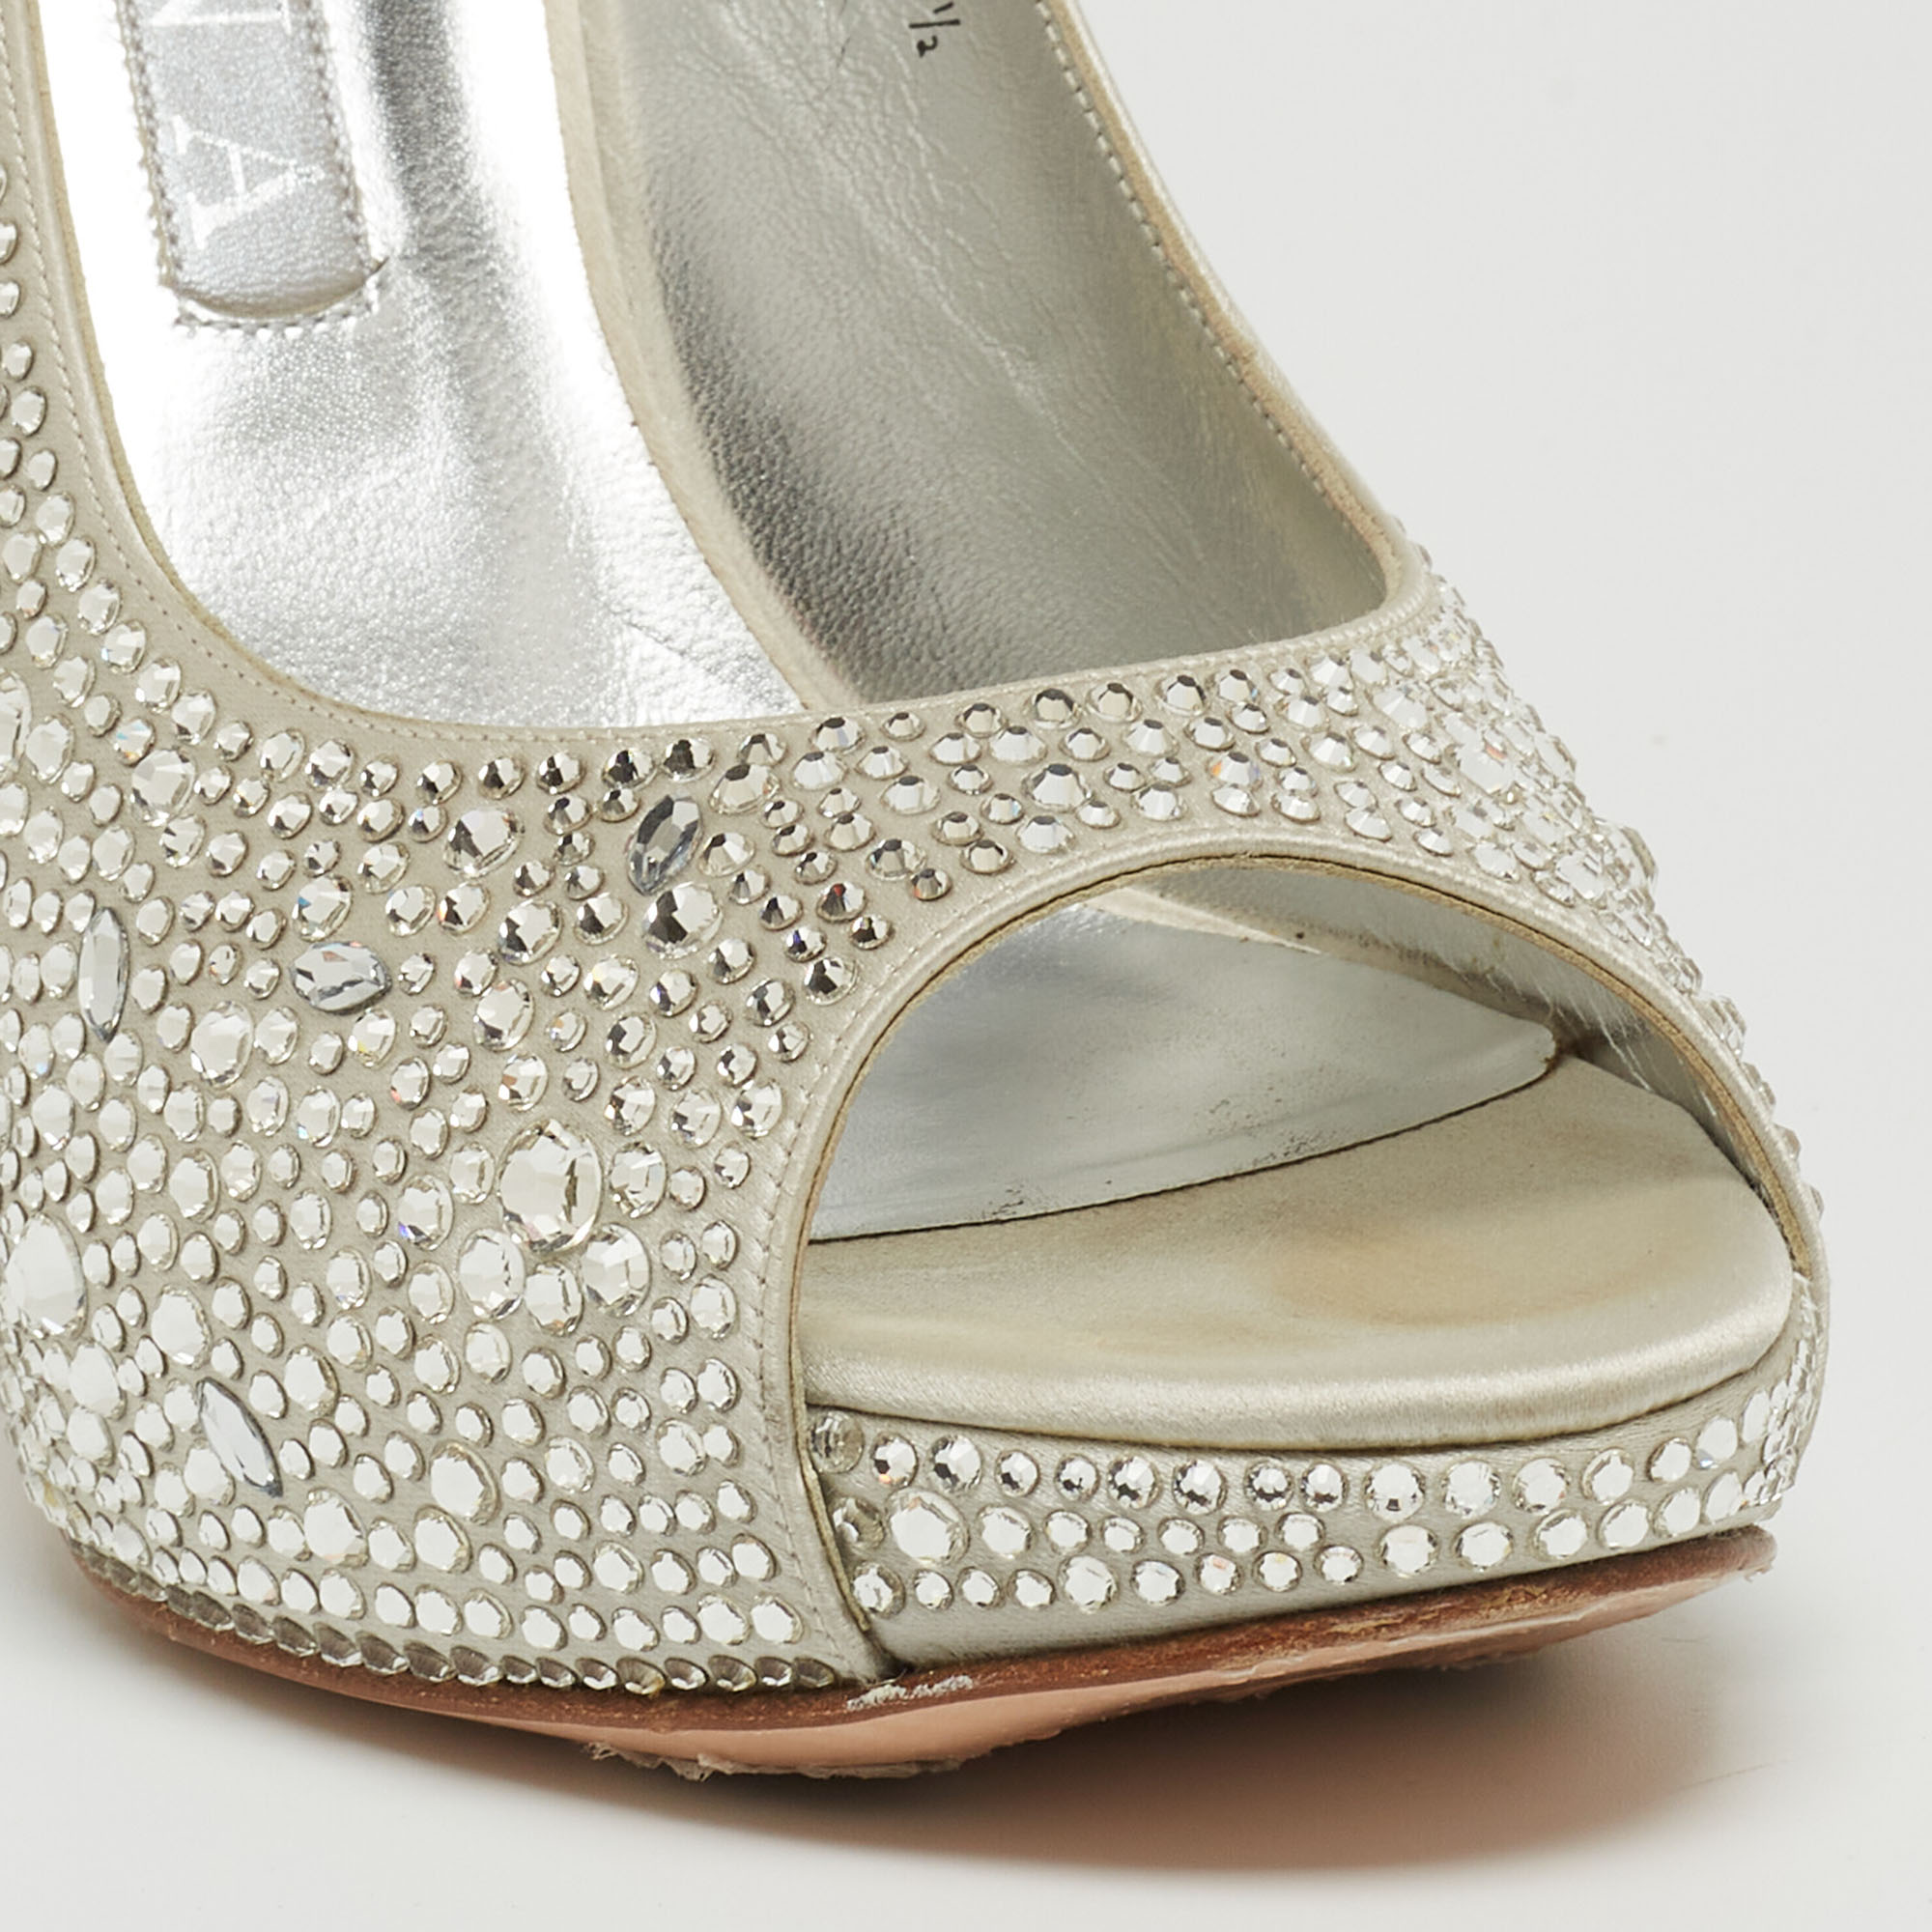 Gina Silver Crystal Embellished Satin Open-Toe Platform Slingback Sandals Size 39.5